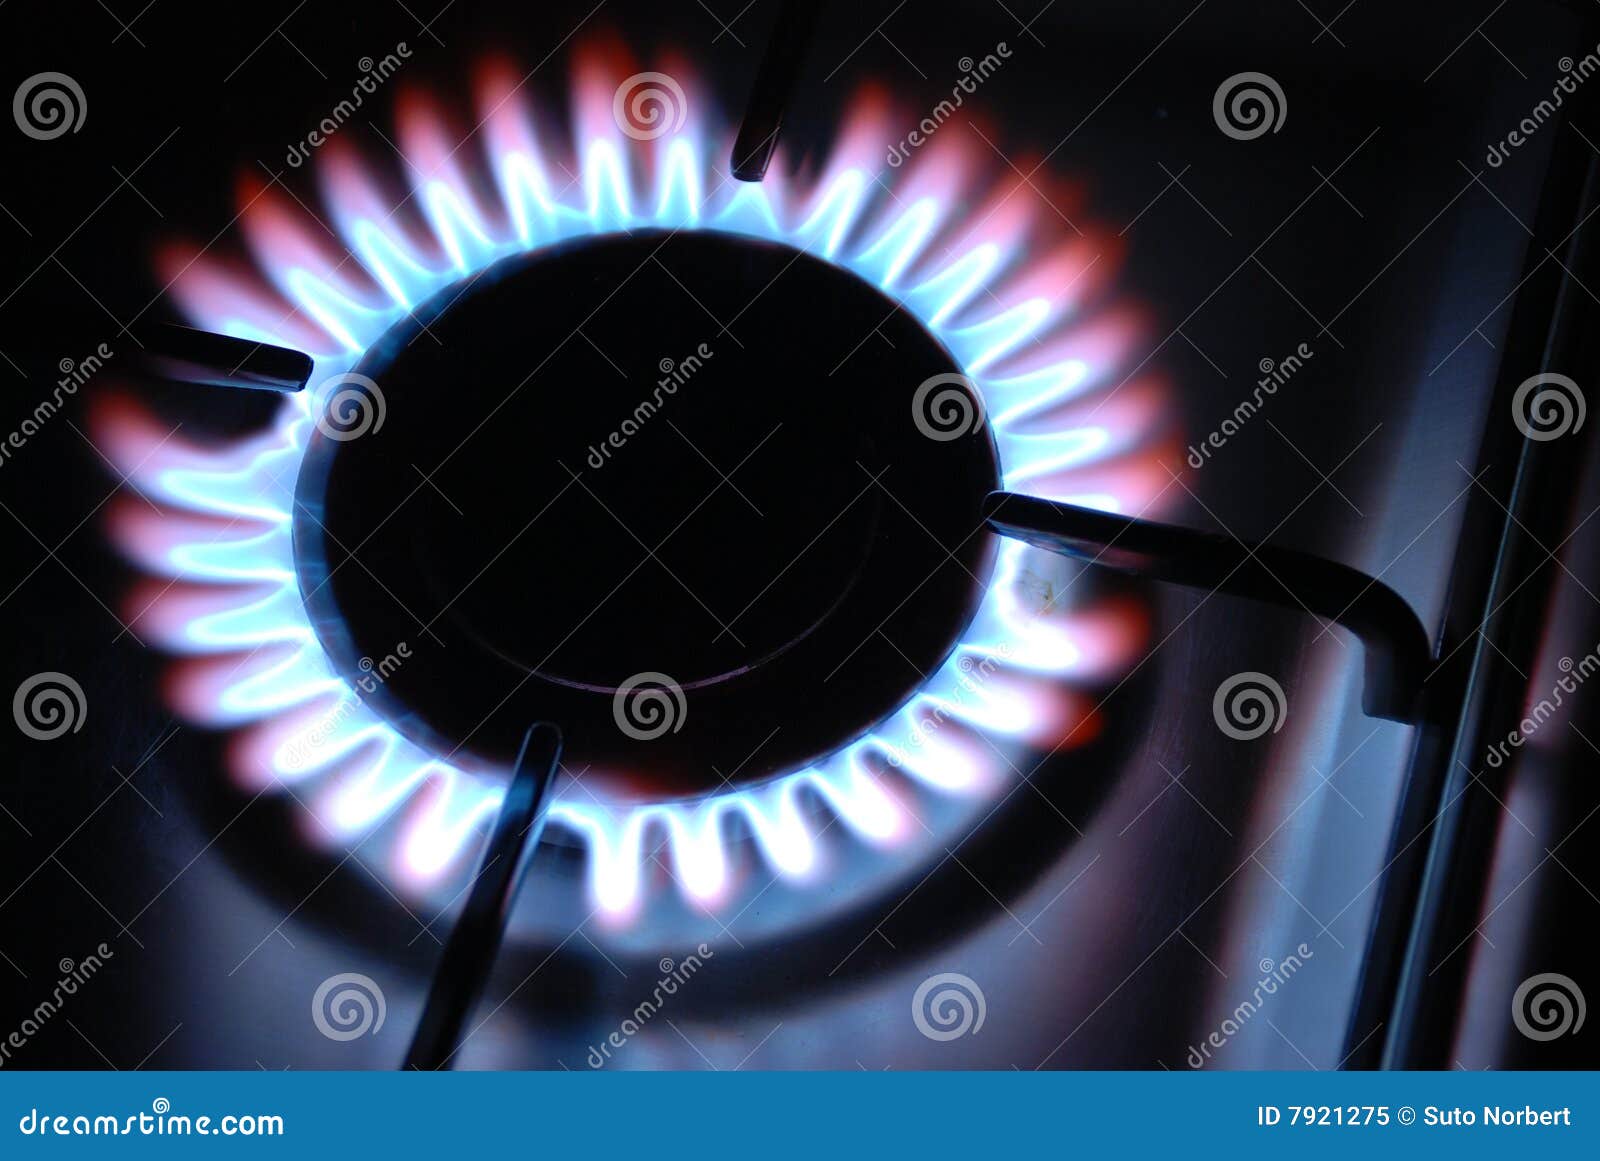 Gas-Flamme stockbild. Bild von flamme, propan, feuer, frech - 7921275